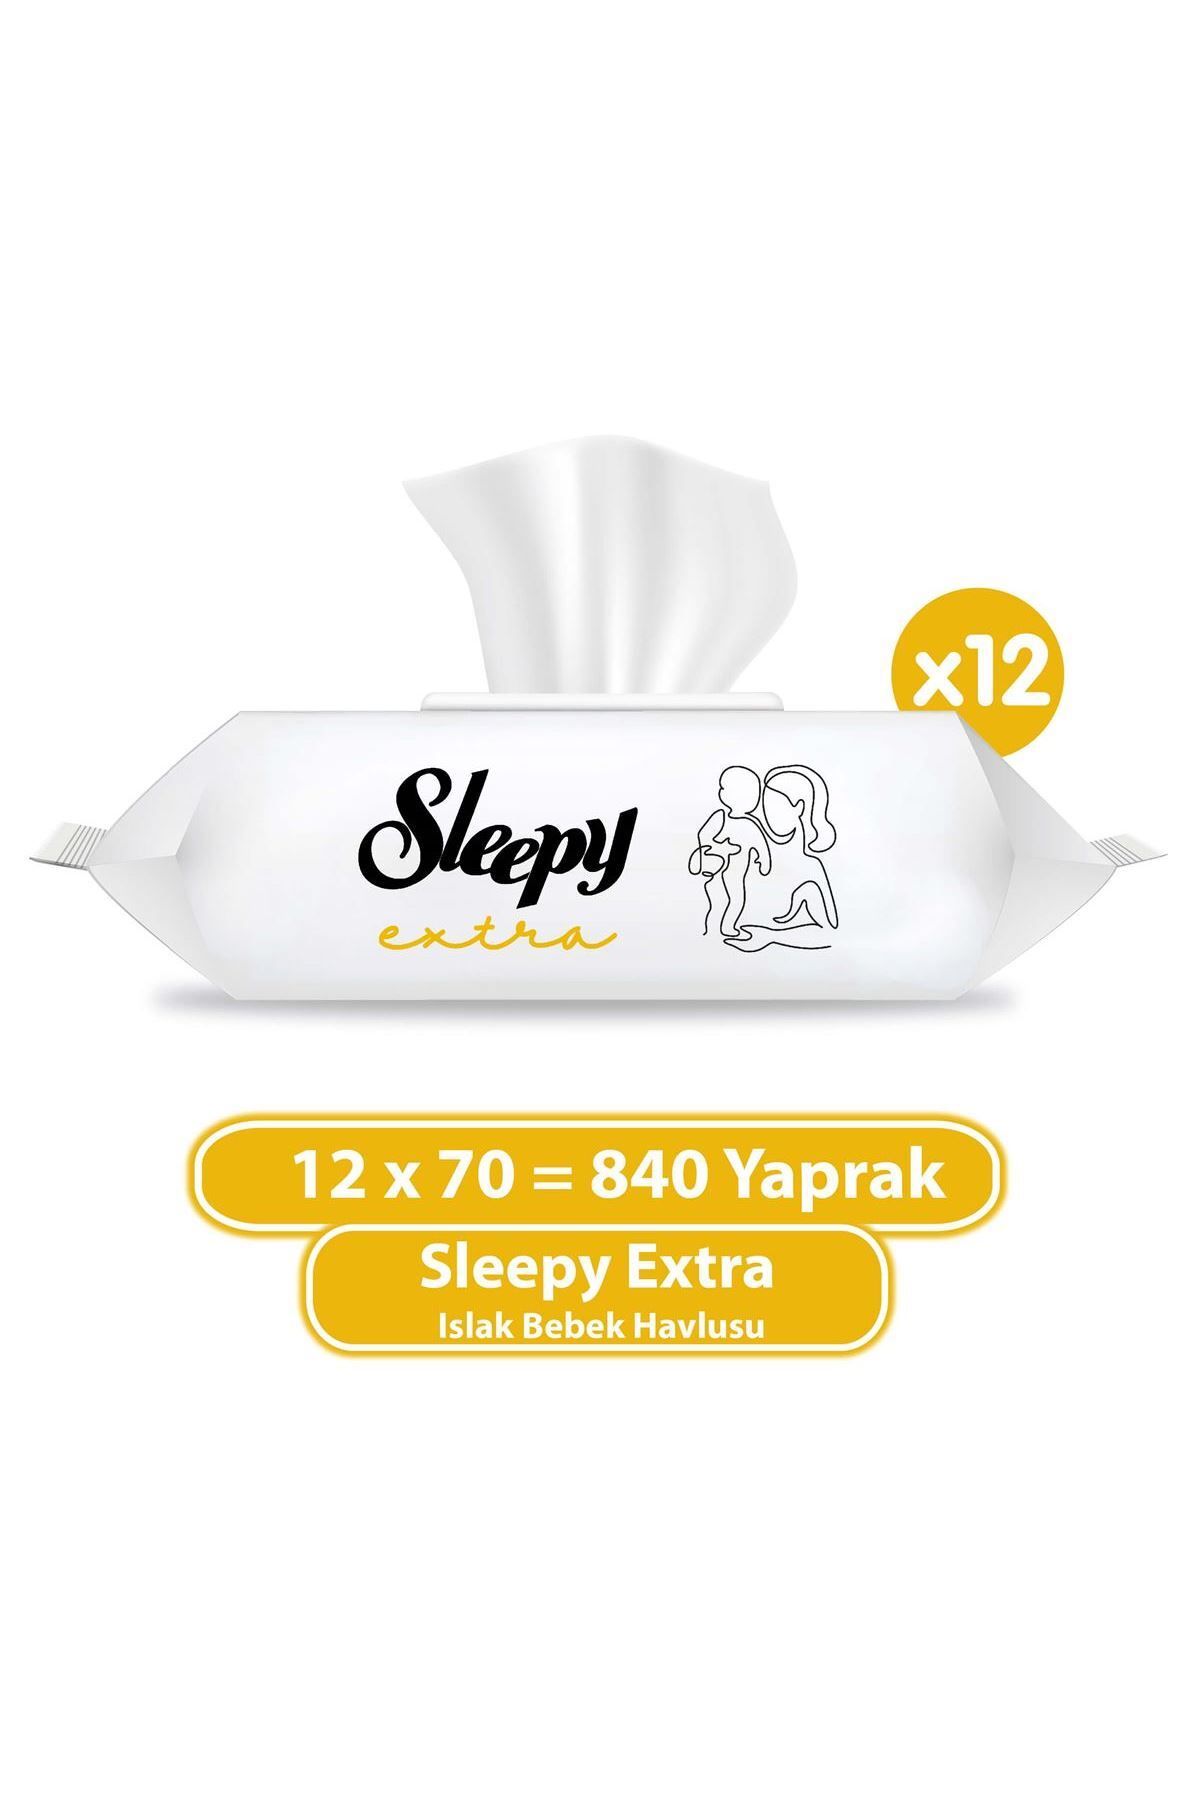 Sleepy Extra Islak Bebek Havlusu 12x70 (840 YAPRAK)